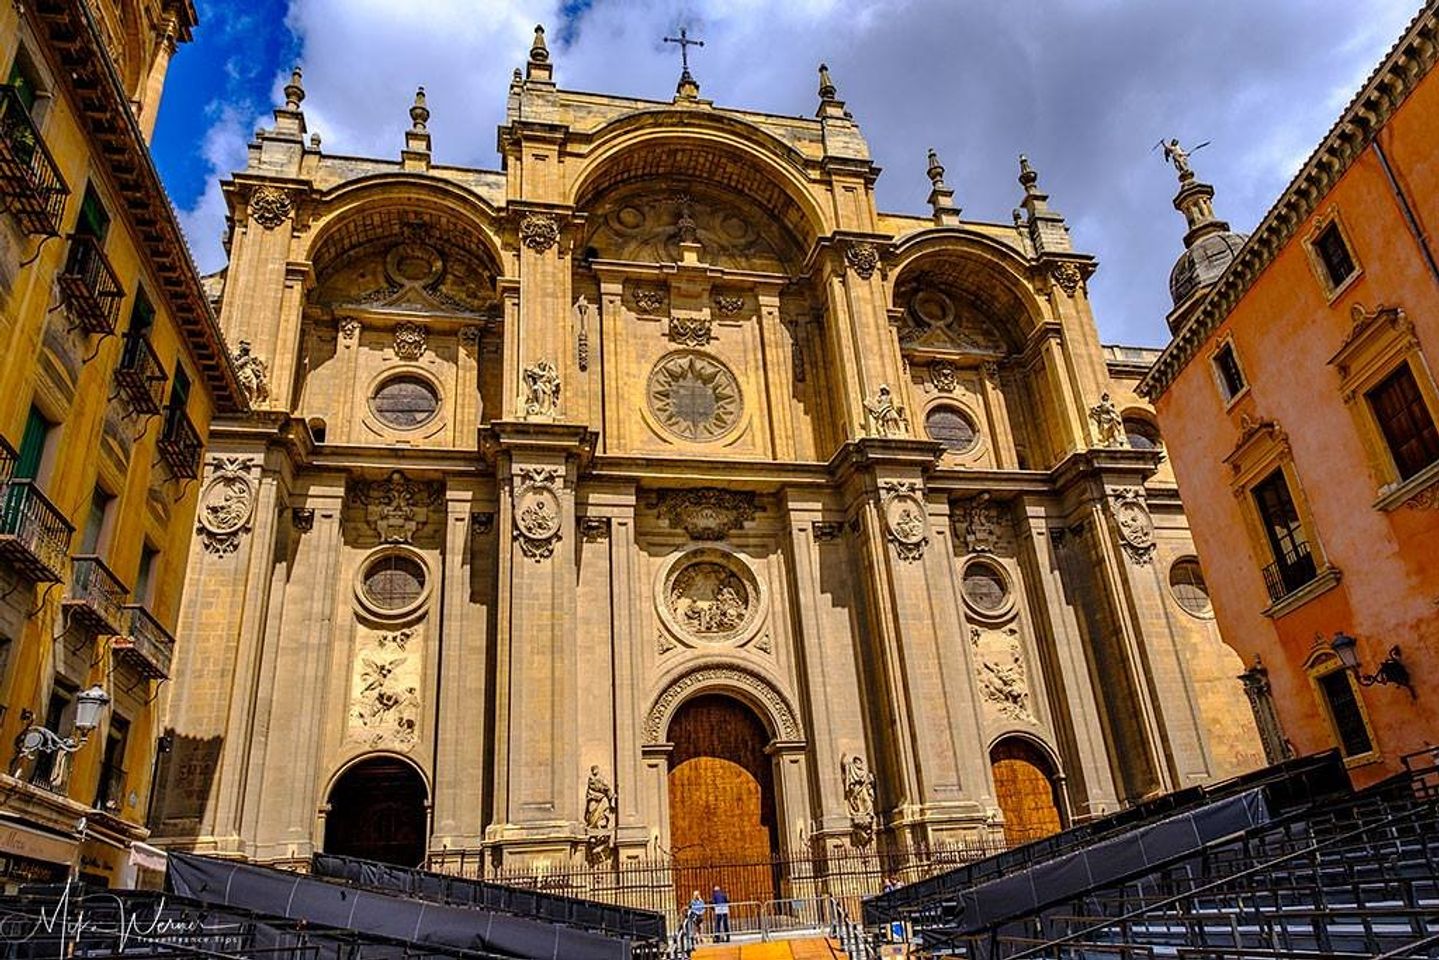 Verken de ongerepte schoonheid van de kathedraal van Granada in Nicaragua.